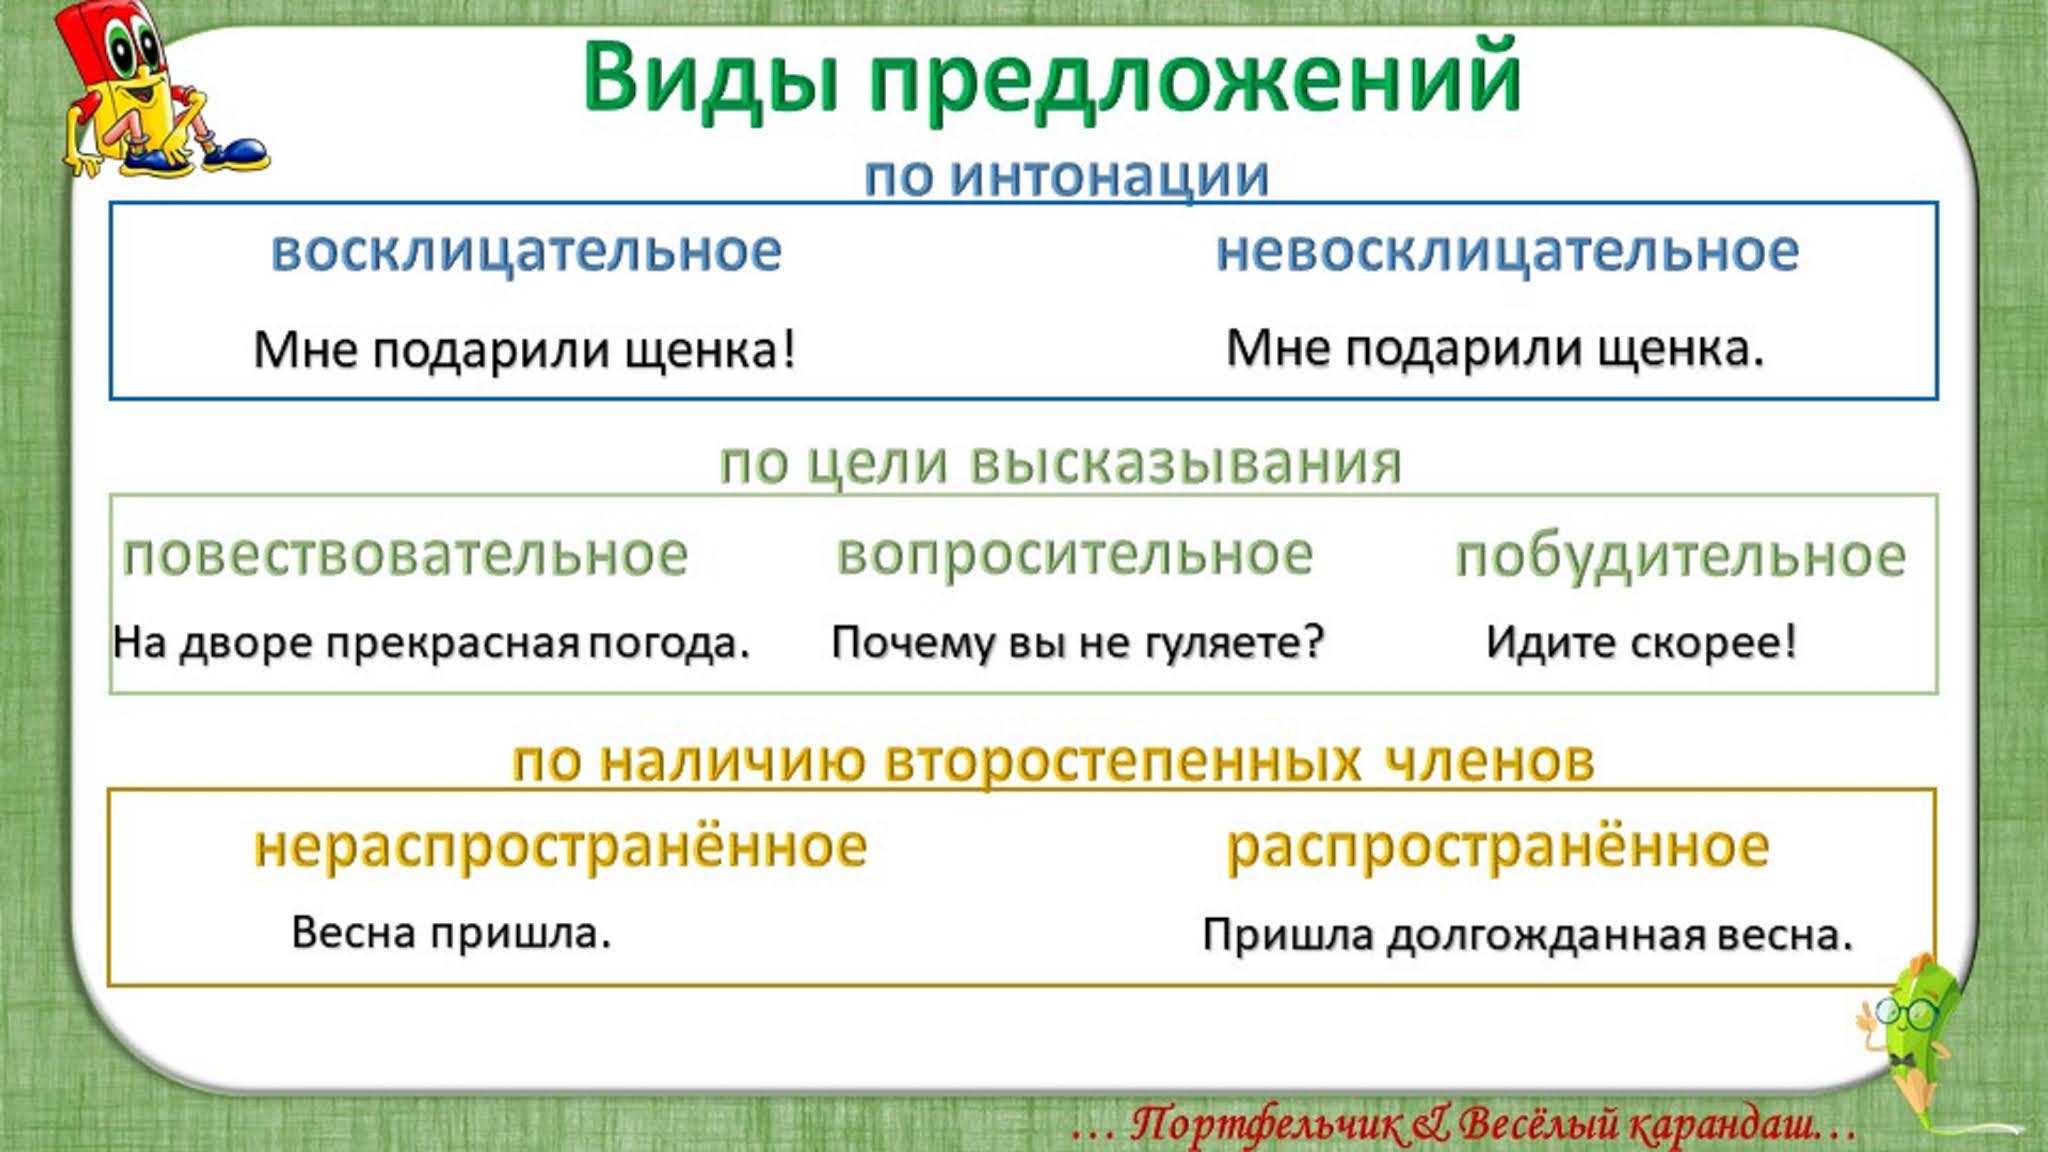 Какие типы предложений бывают в русском языке. Виды предложений. Предложение виды предложений. Правило виды предложений. Виды предложений в русском языке.